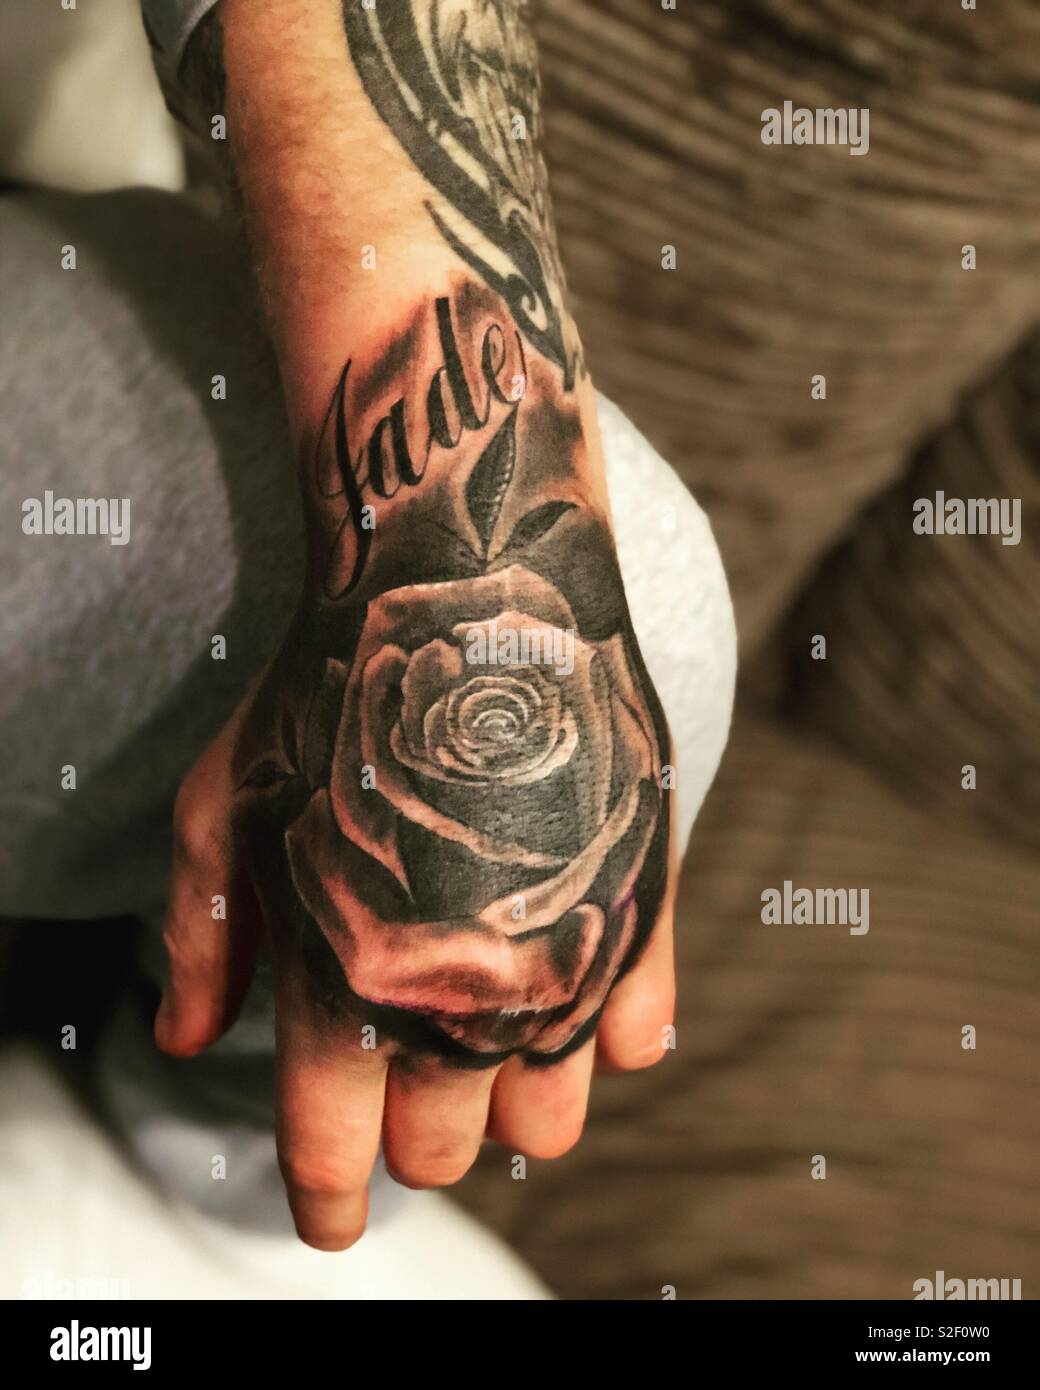 Boyfriend new tattoo Stock Photo - Alamy